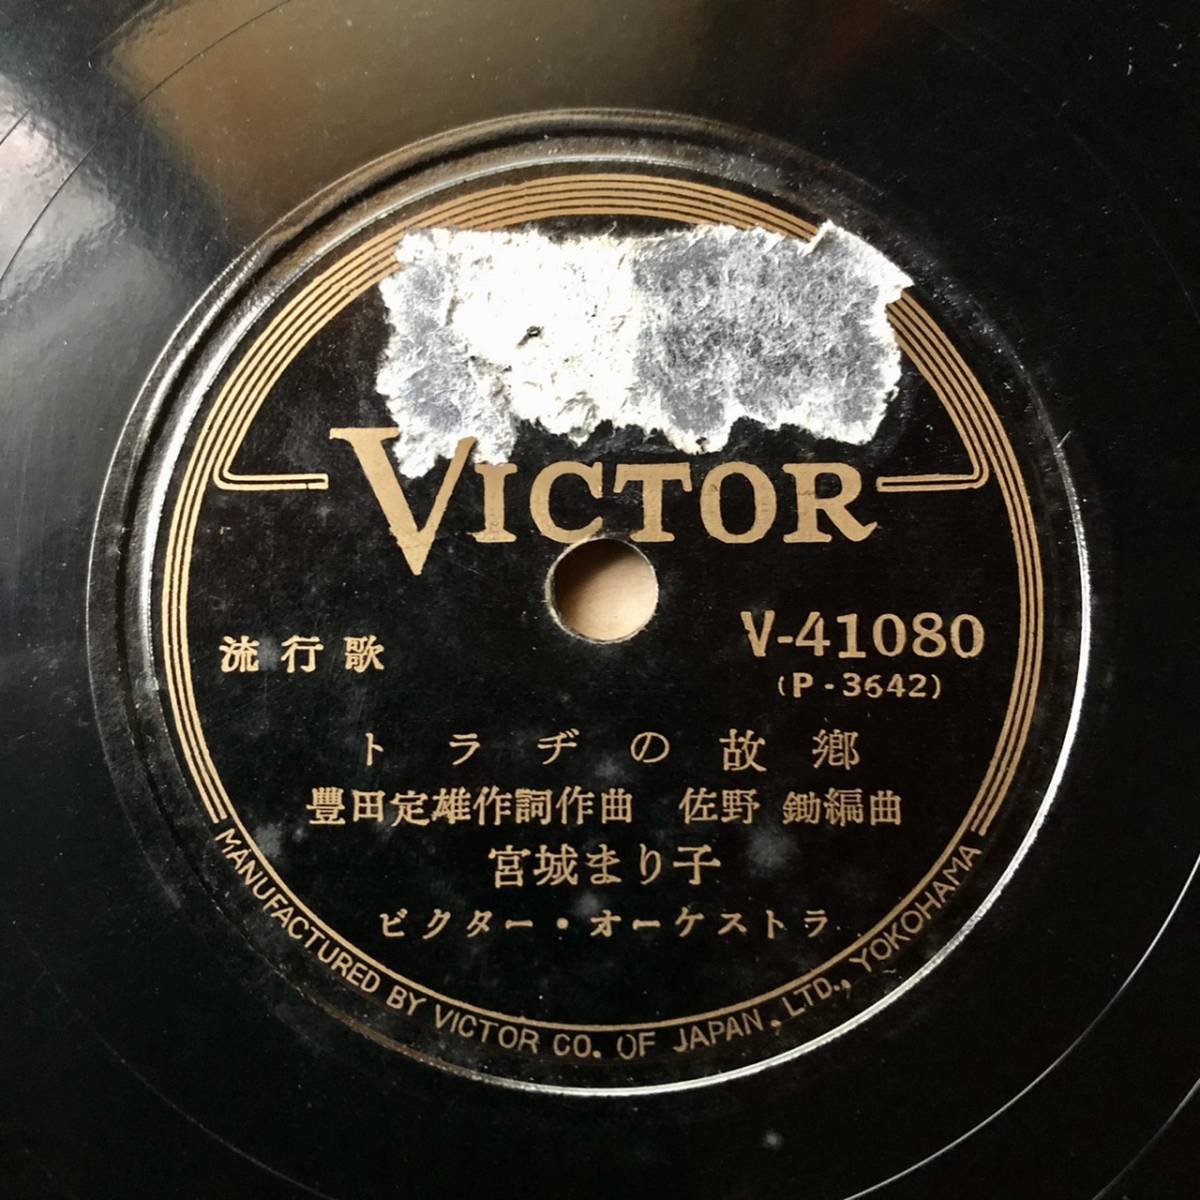 珍しい 朝鮮関連SP盤SPレコード あゝ、 三十八度線 渡邊はま子 トラヂ